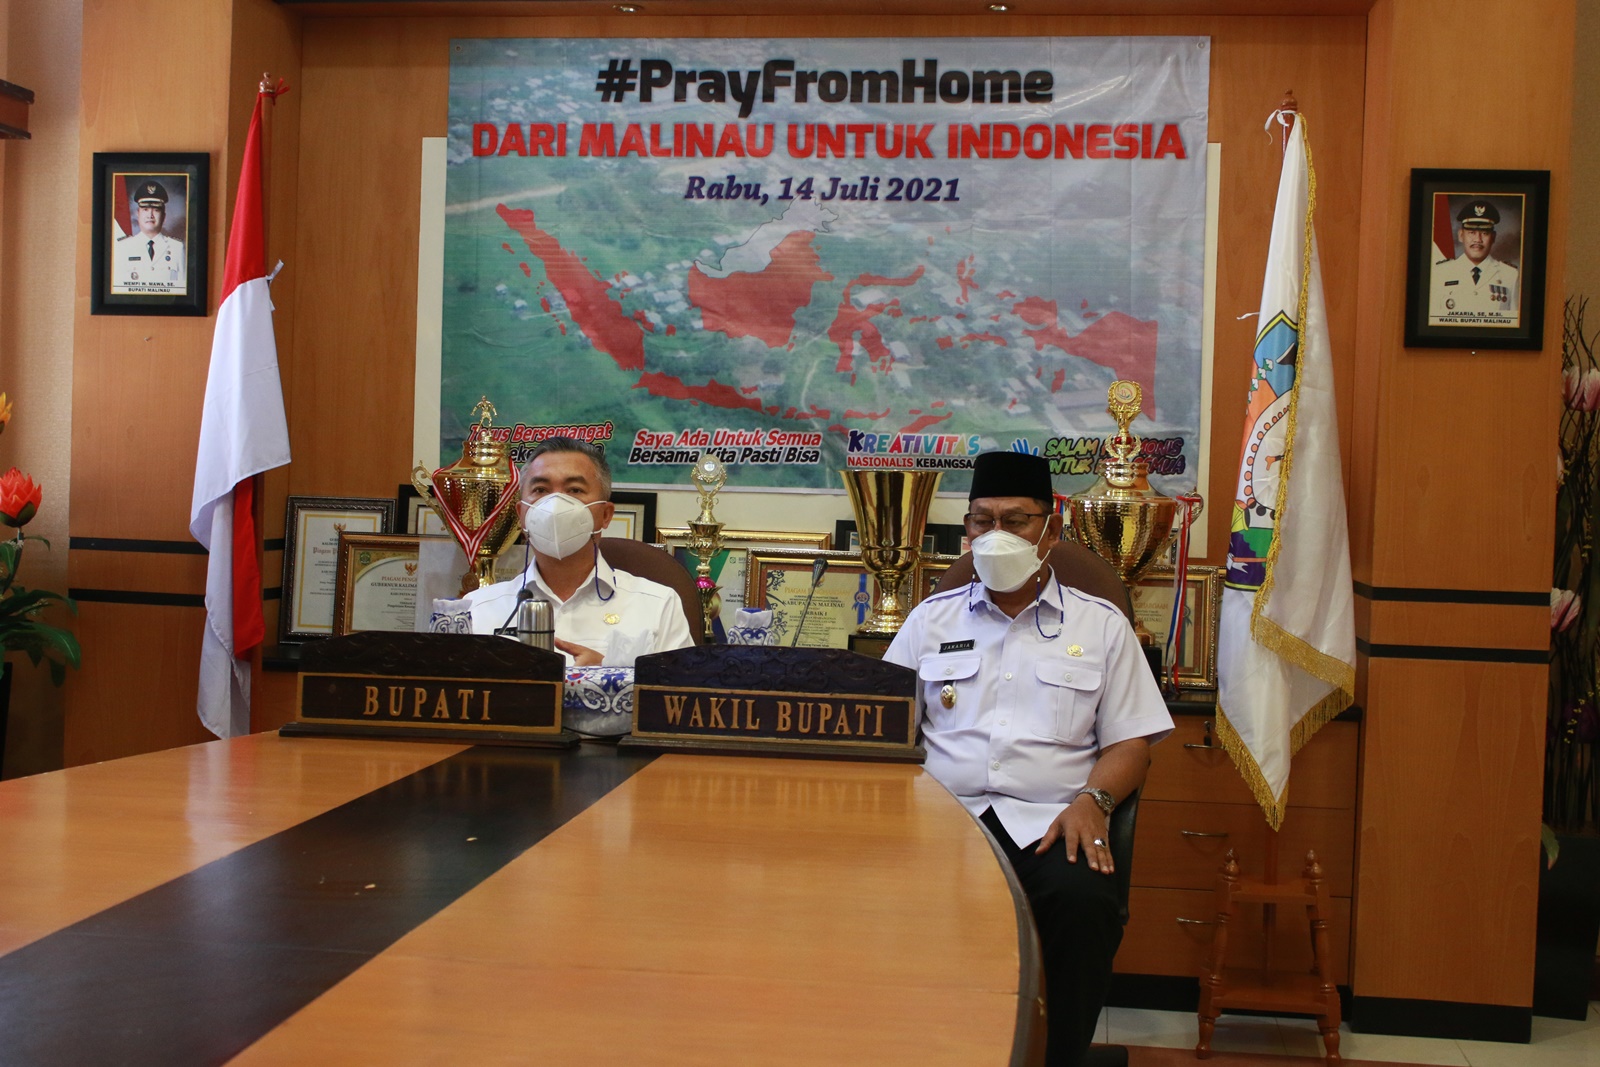 prayforhome-dari-malinau-untuk-indonesia